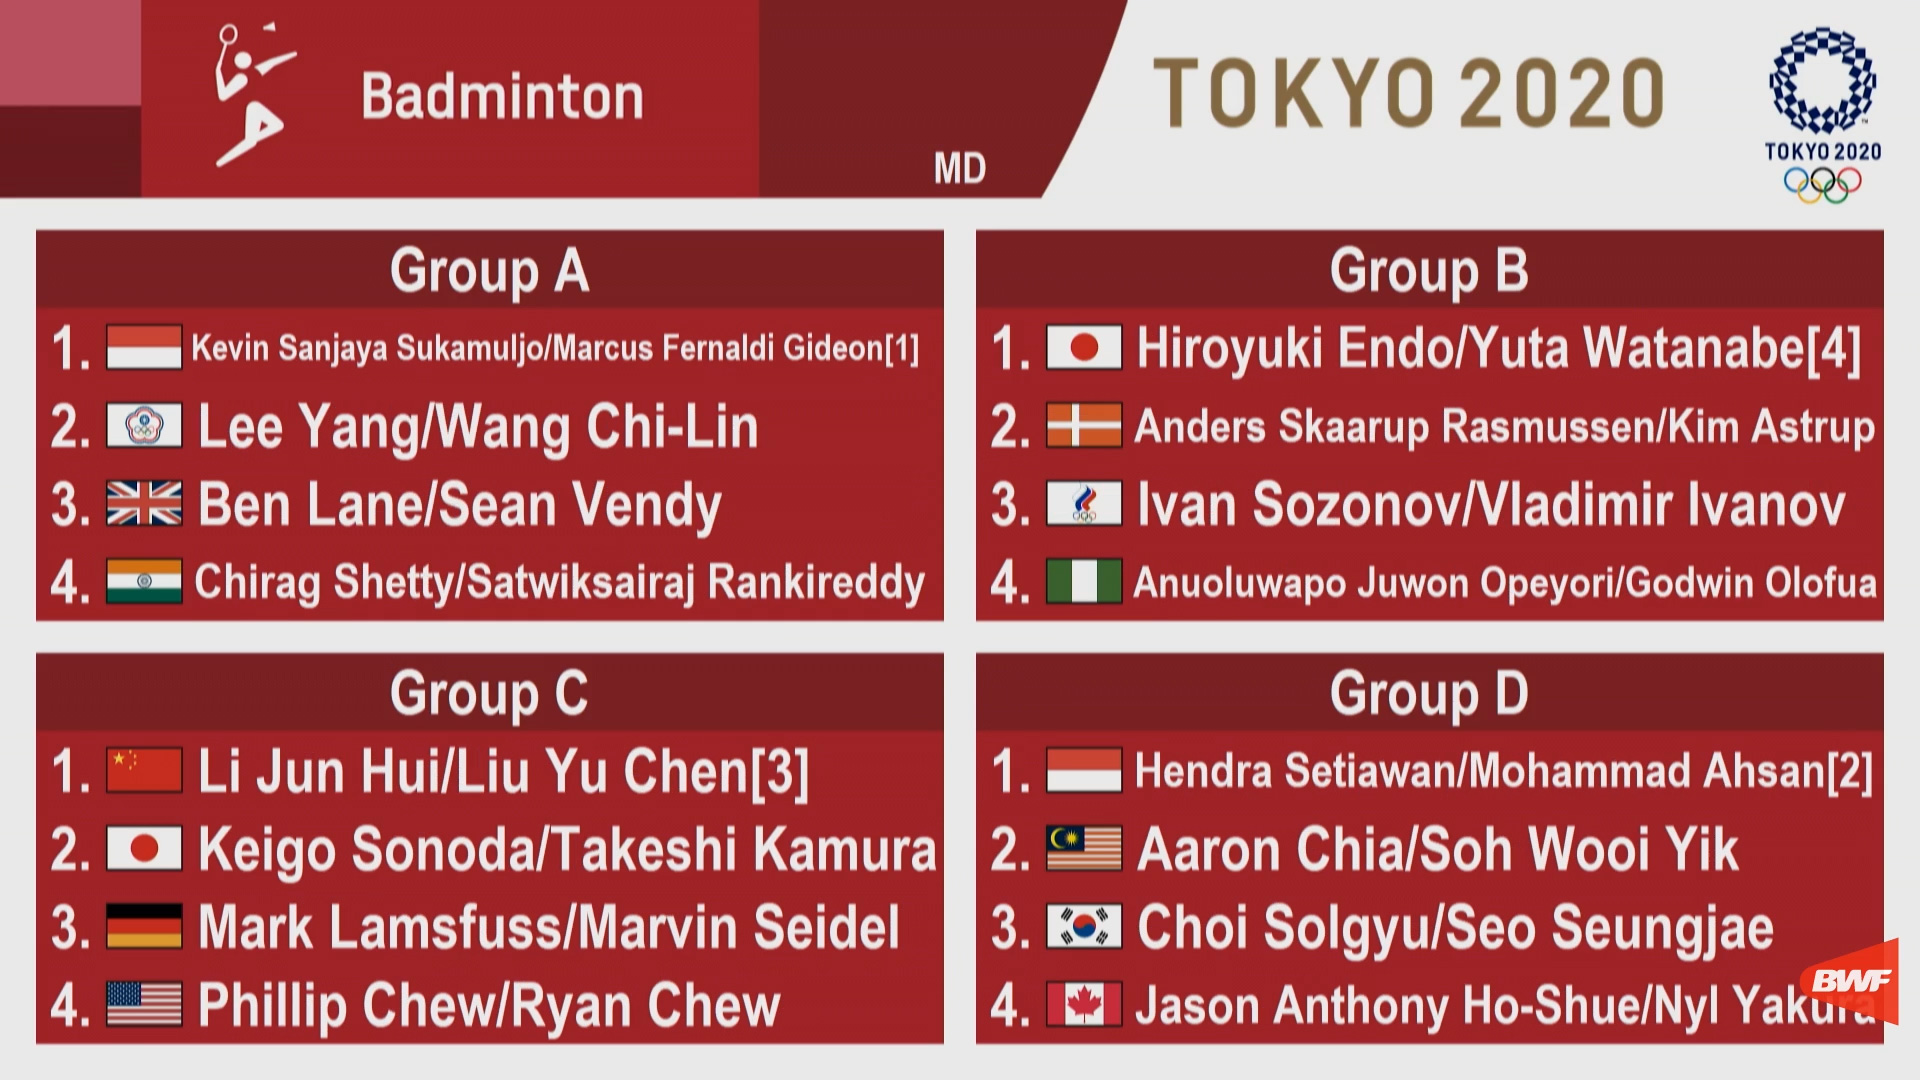 Jadual badminton olimpik tokyo 2020